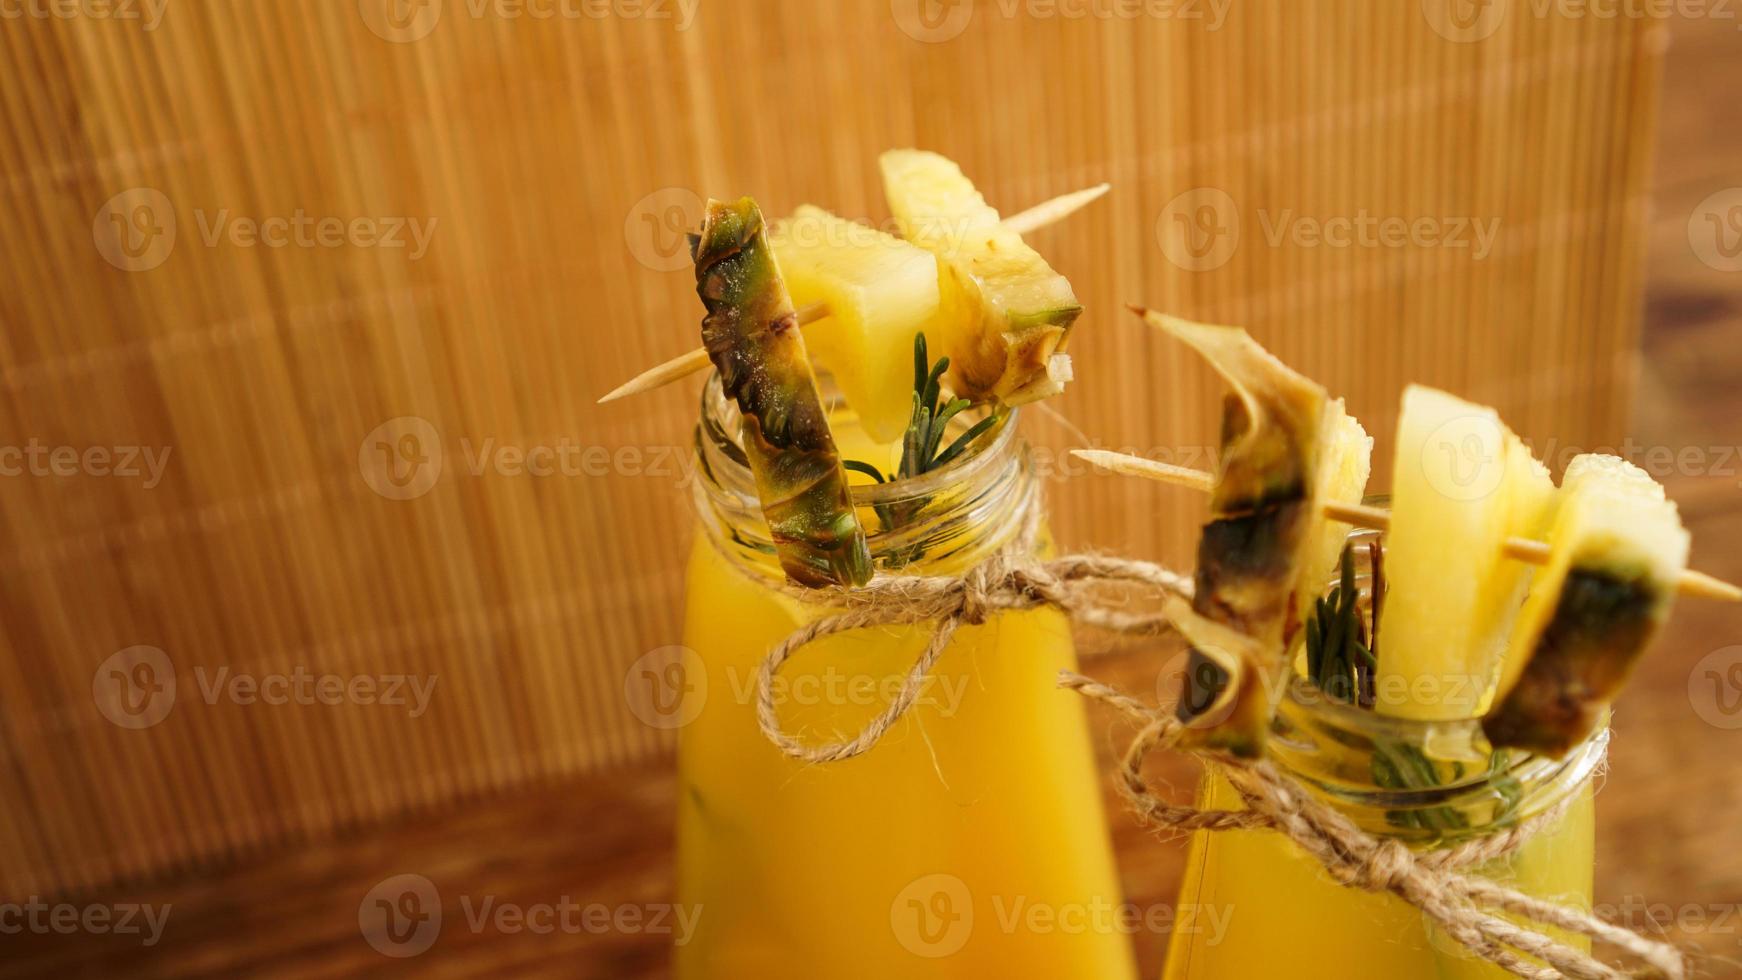 ananasjuice i en liten flaska. ananasskivor dekorerar drycken foto